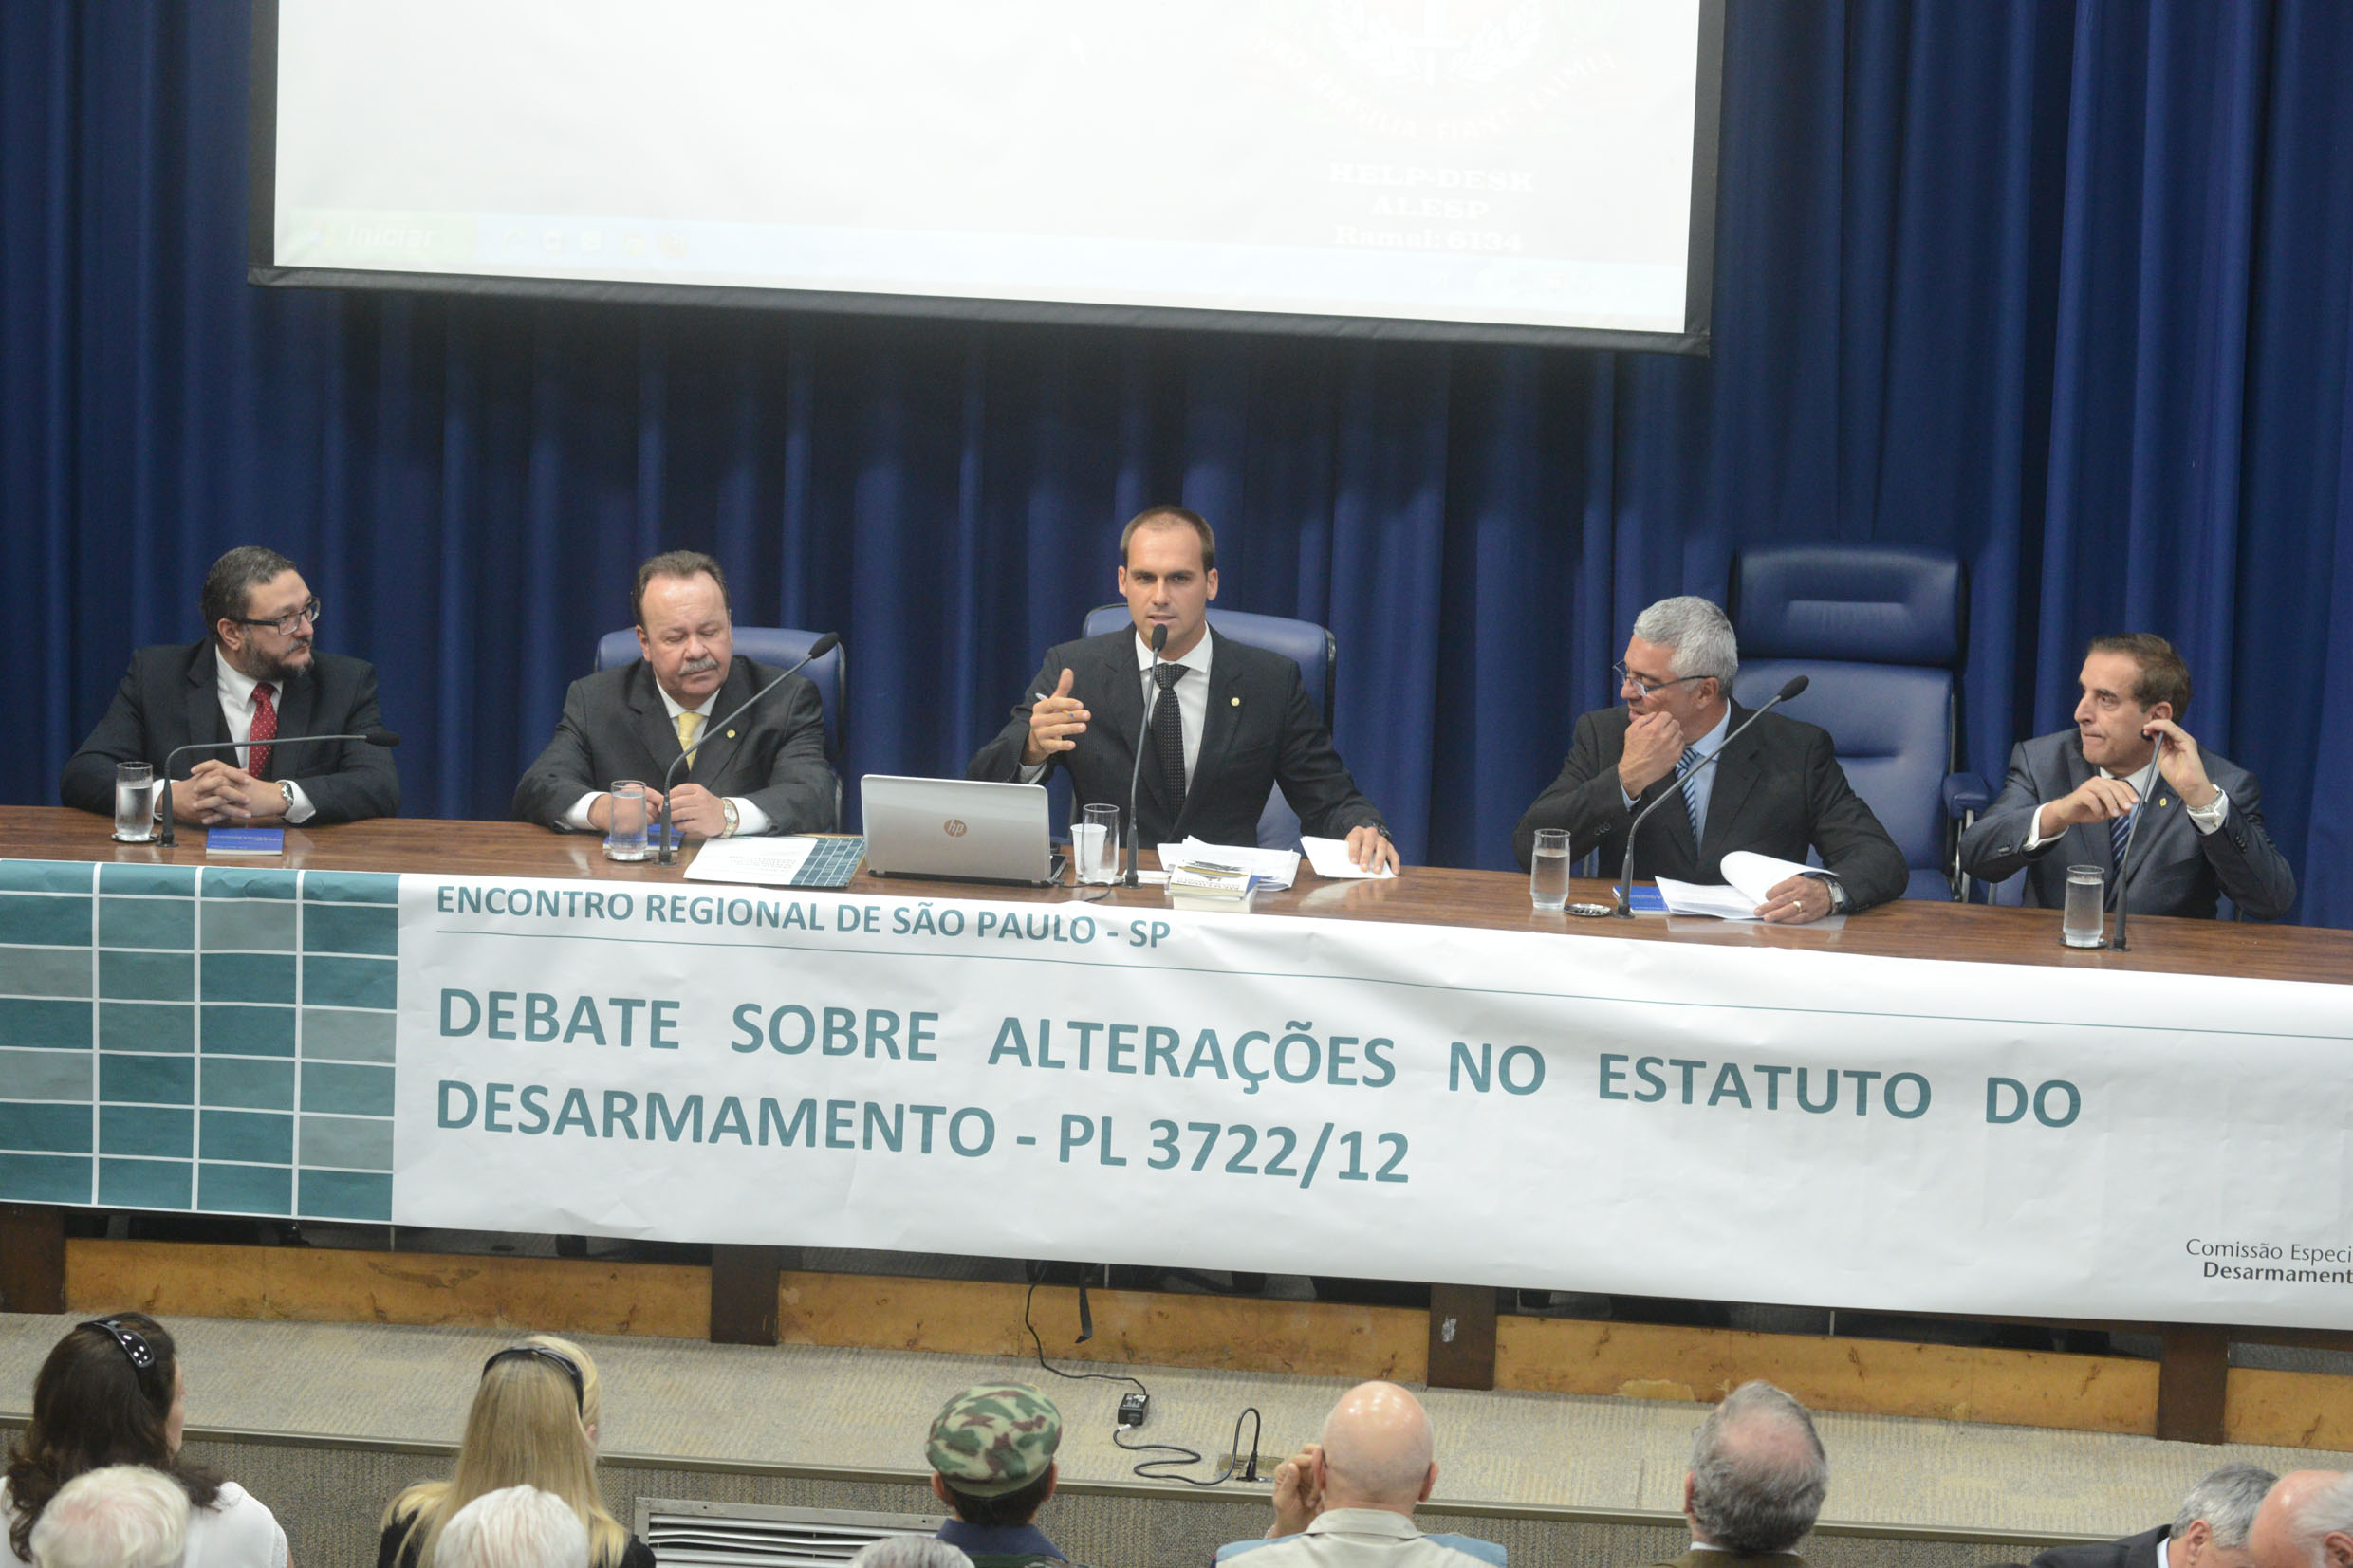 Benê Barbosa, Antonio Goulart, Eduardo Bolsonaro, Major Olímpio e Misael Antonio de Souza